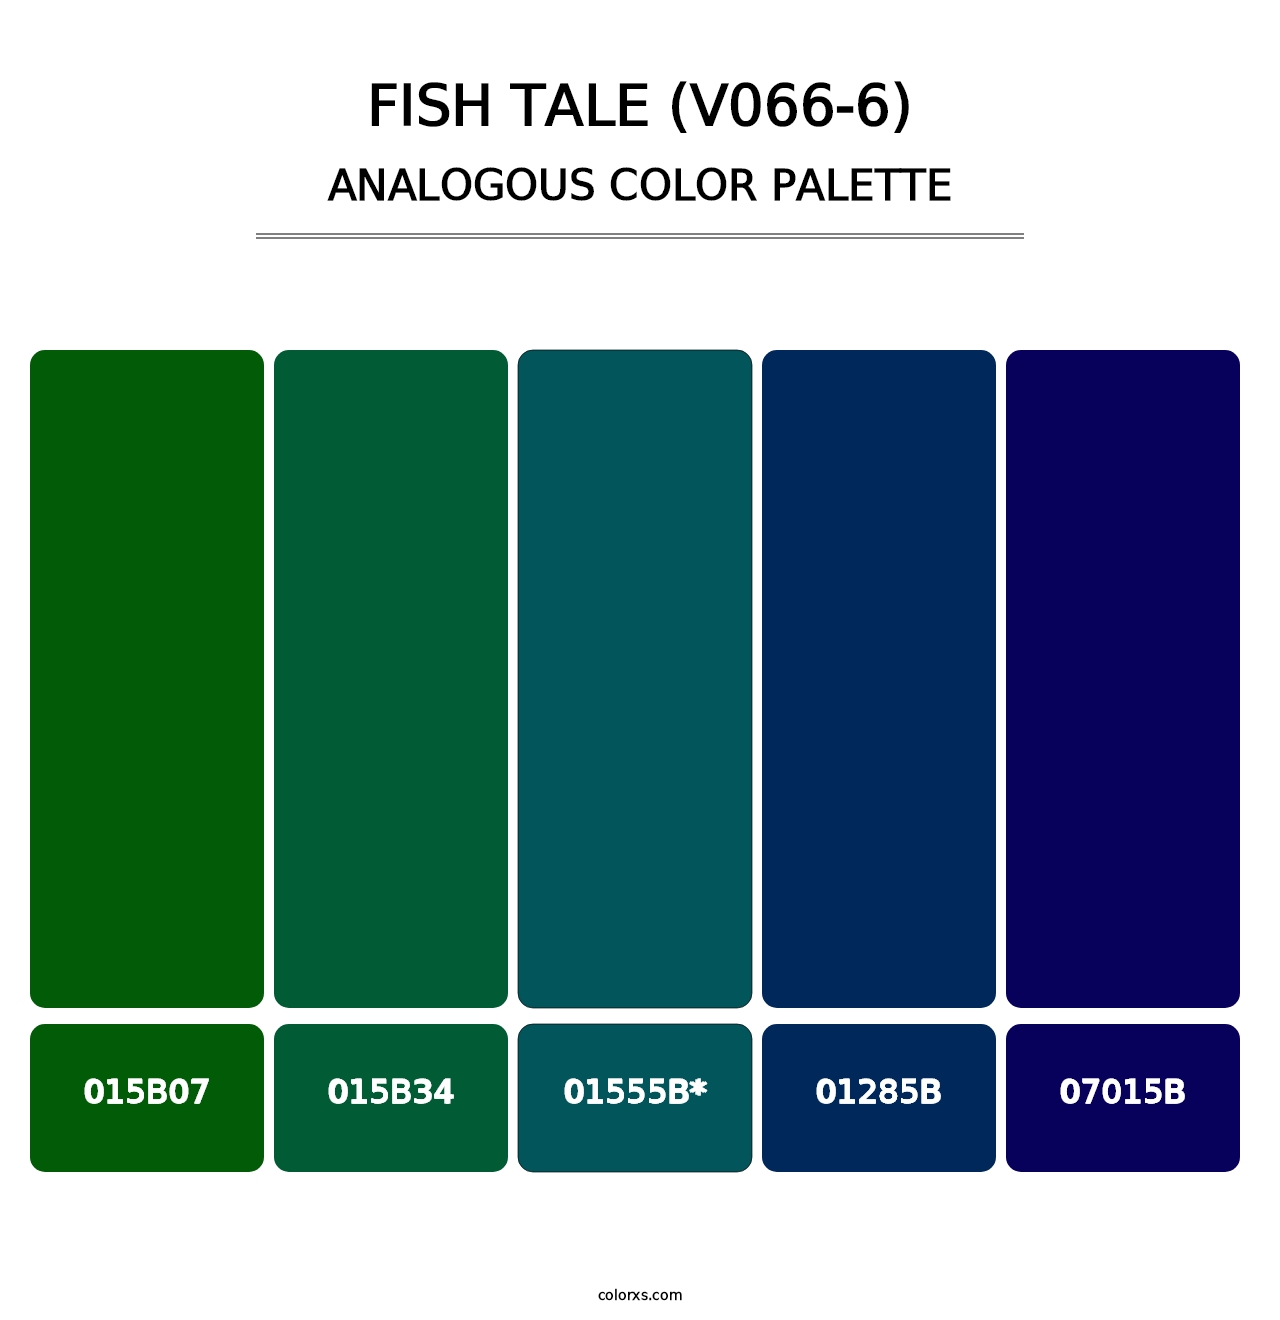 Fish Tale (V066-6) - Analogous Color Palette